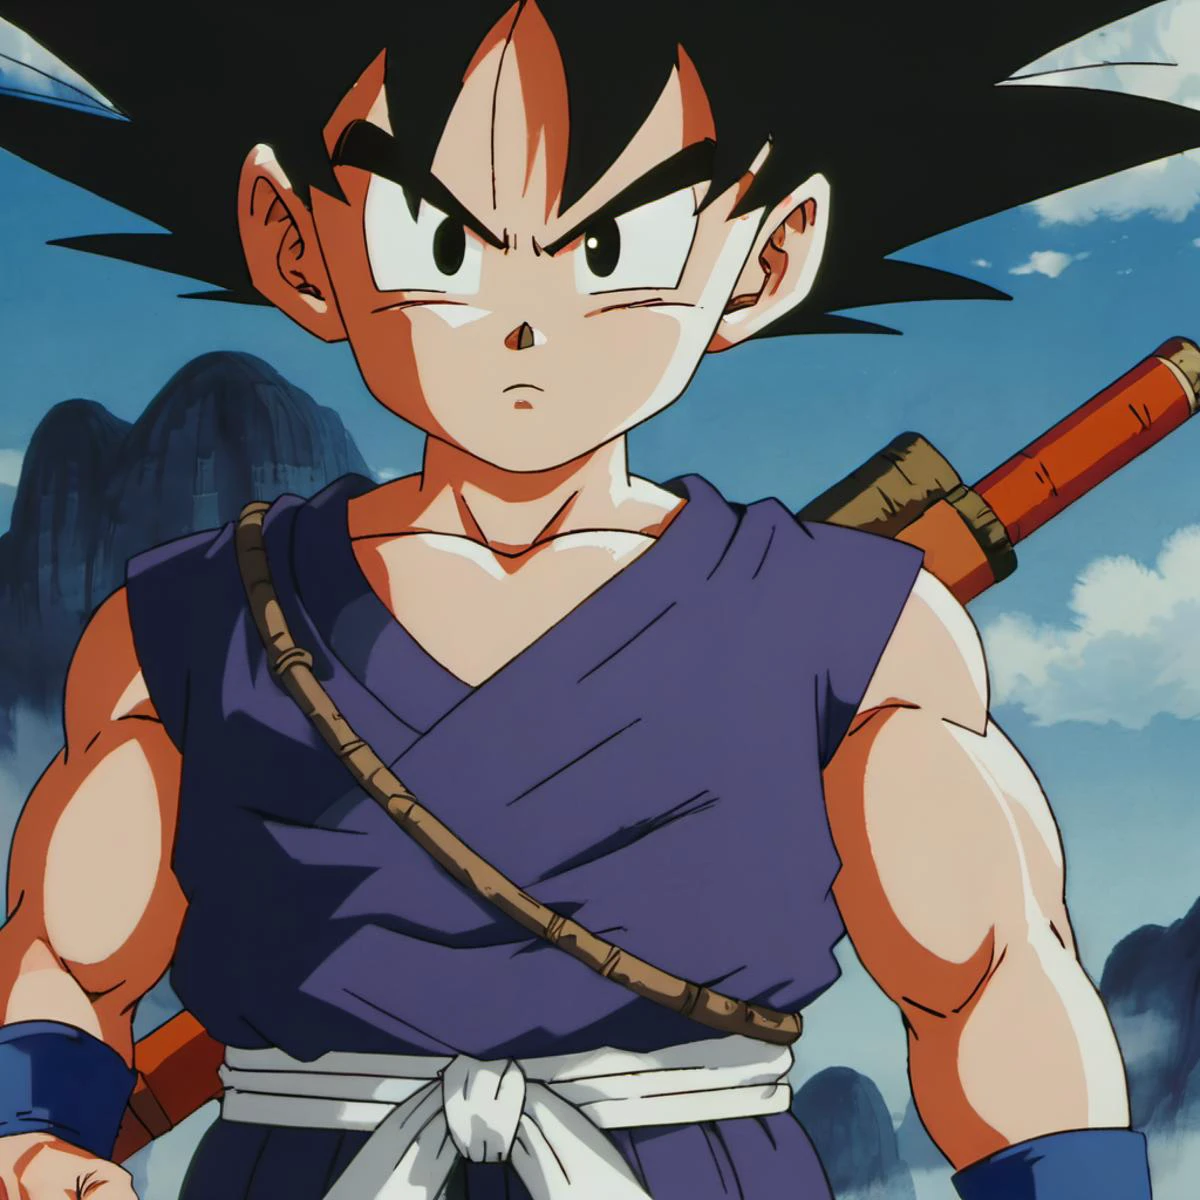 Captura de pantalla de anime en estilo artístico mnst de Son Goku., alta definición, 4k, alta calidad al estilo de akira toriyama